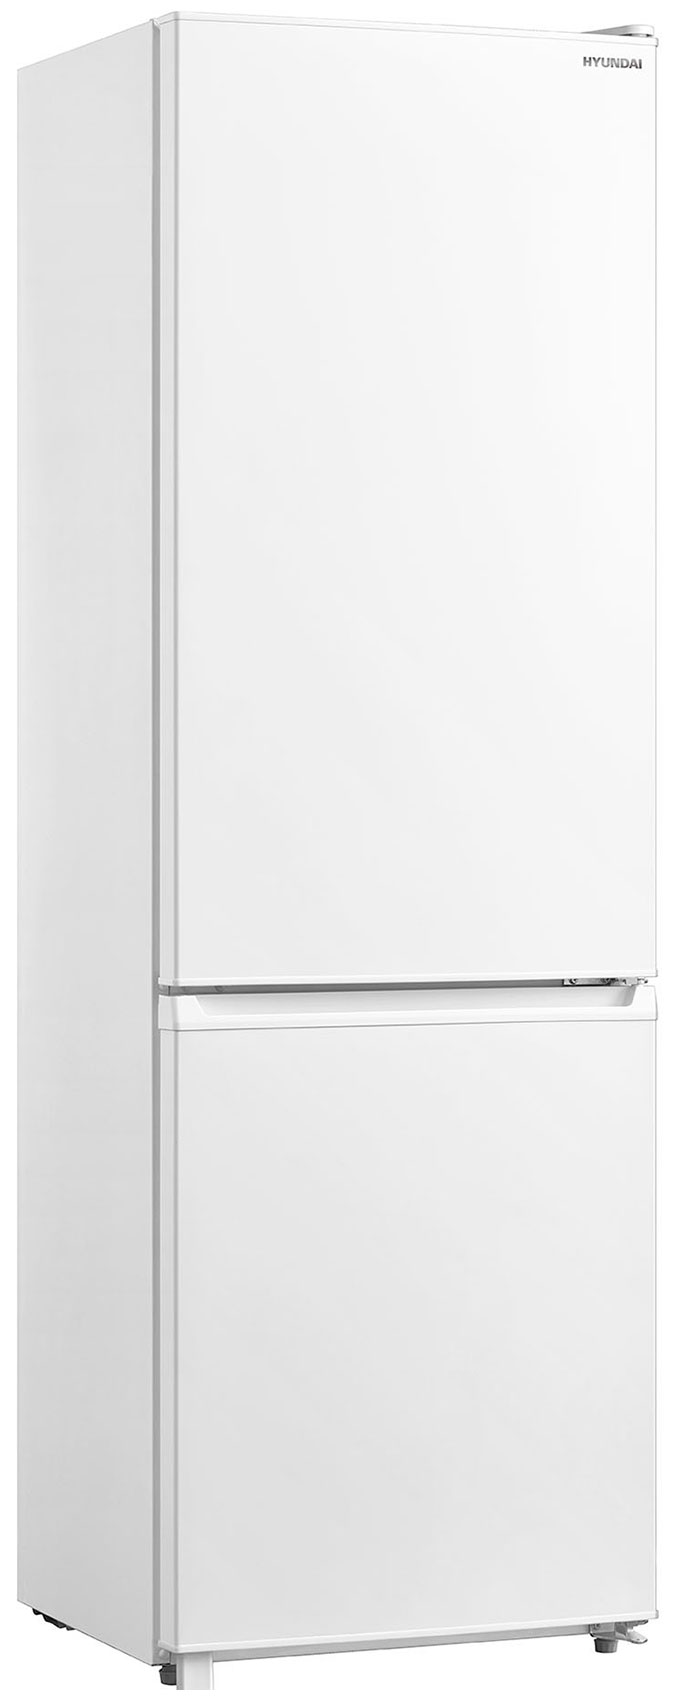 Двухкамерный холодильник Hyundai CC3091LWT белый двухкамерный холодильник hyundai cc3093fwt белый